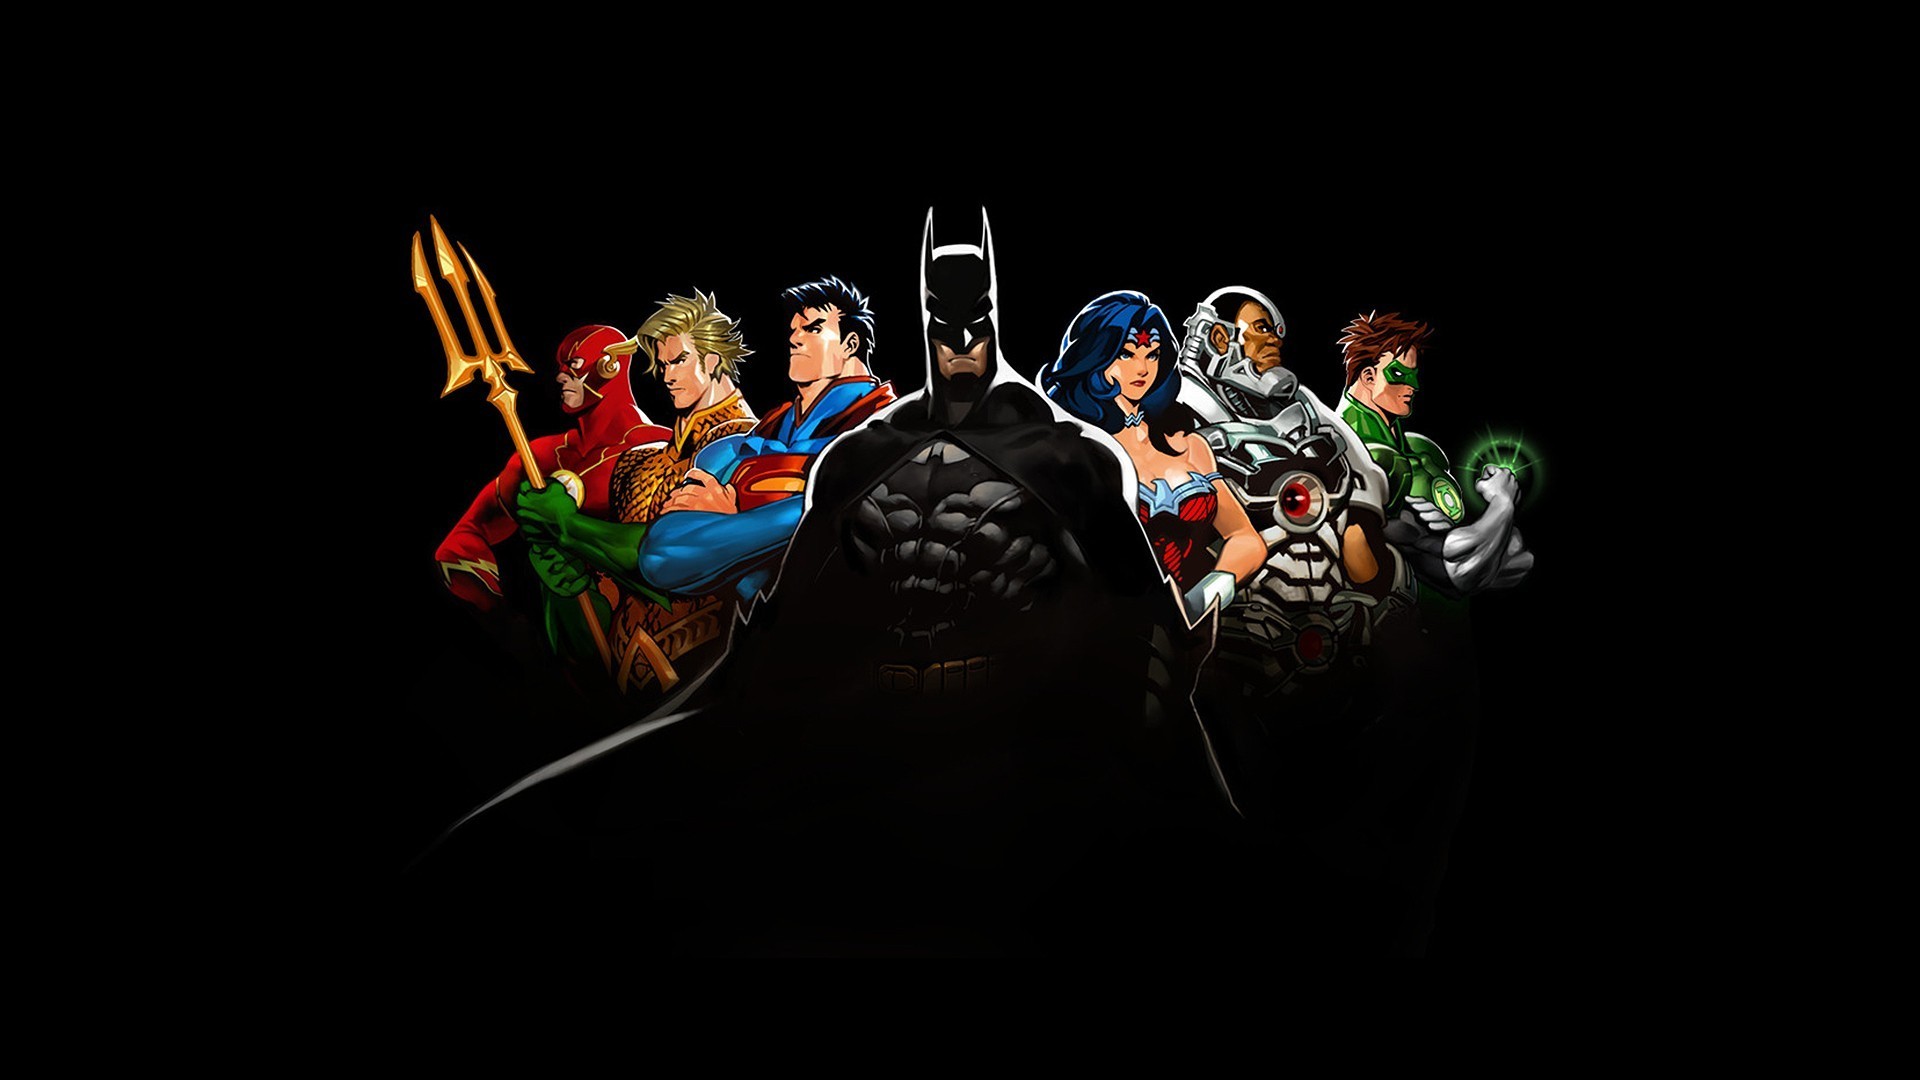 #The Flash, #Justice League, #comics, #Aquaman, #Batman, #DC Comics, #cyborg, #Green Lantern, #Wonder Woman, #Superman, wallpaper. Mocah HD Wallpaper